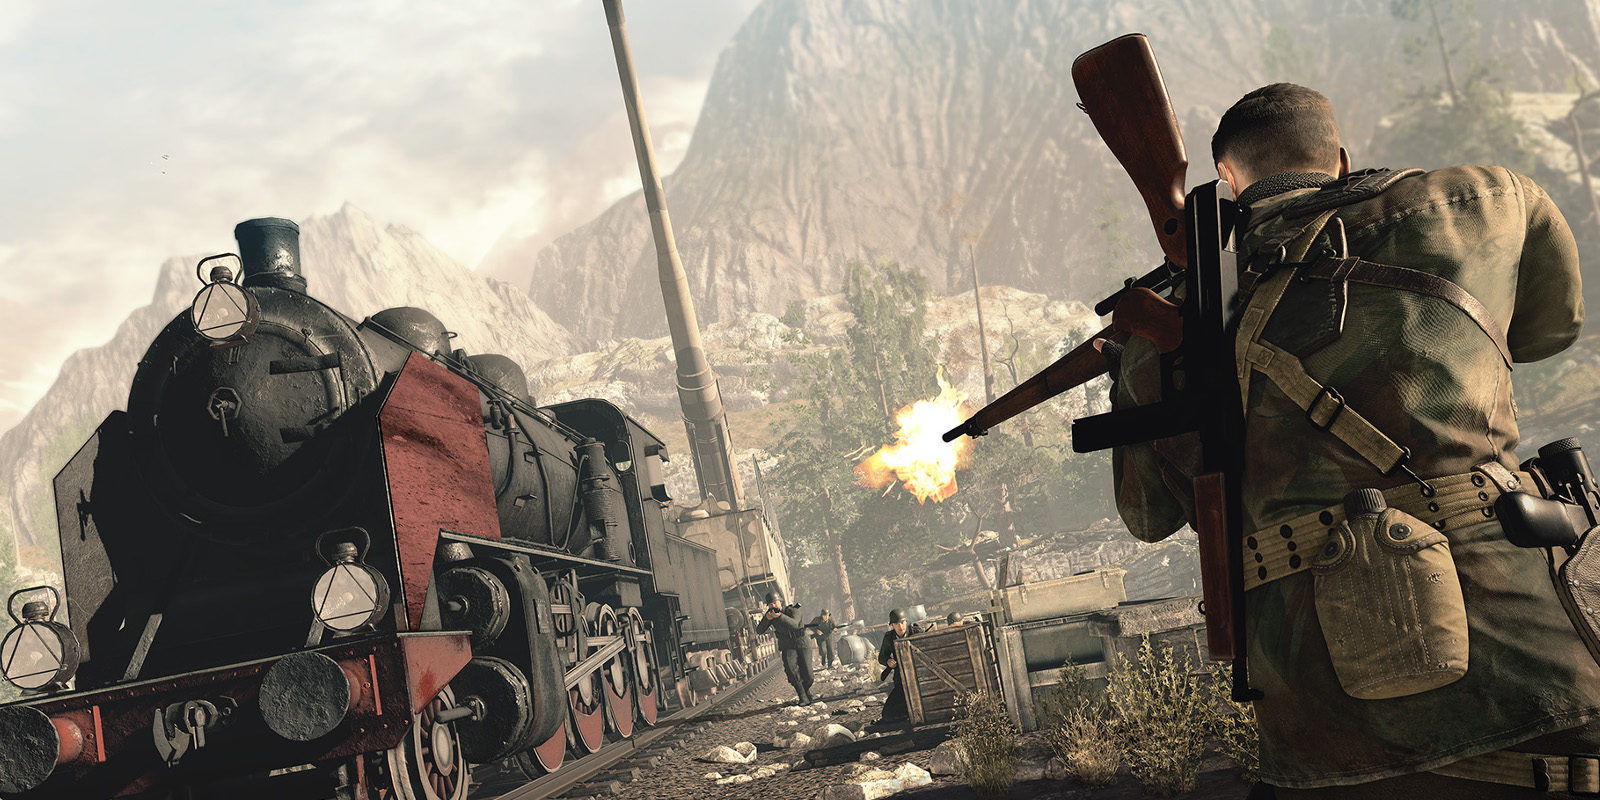 El tráiler de lanzamiento de 'Sniper Elite 4' nos lleva de vuelta a la Segunda Guerra Mundial